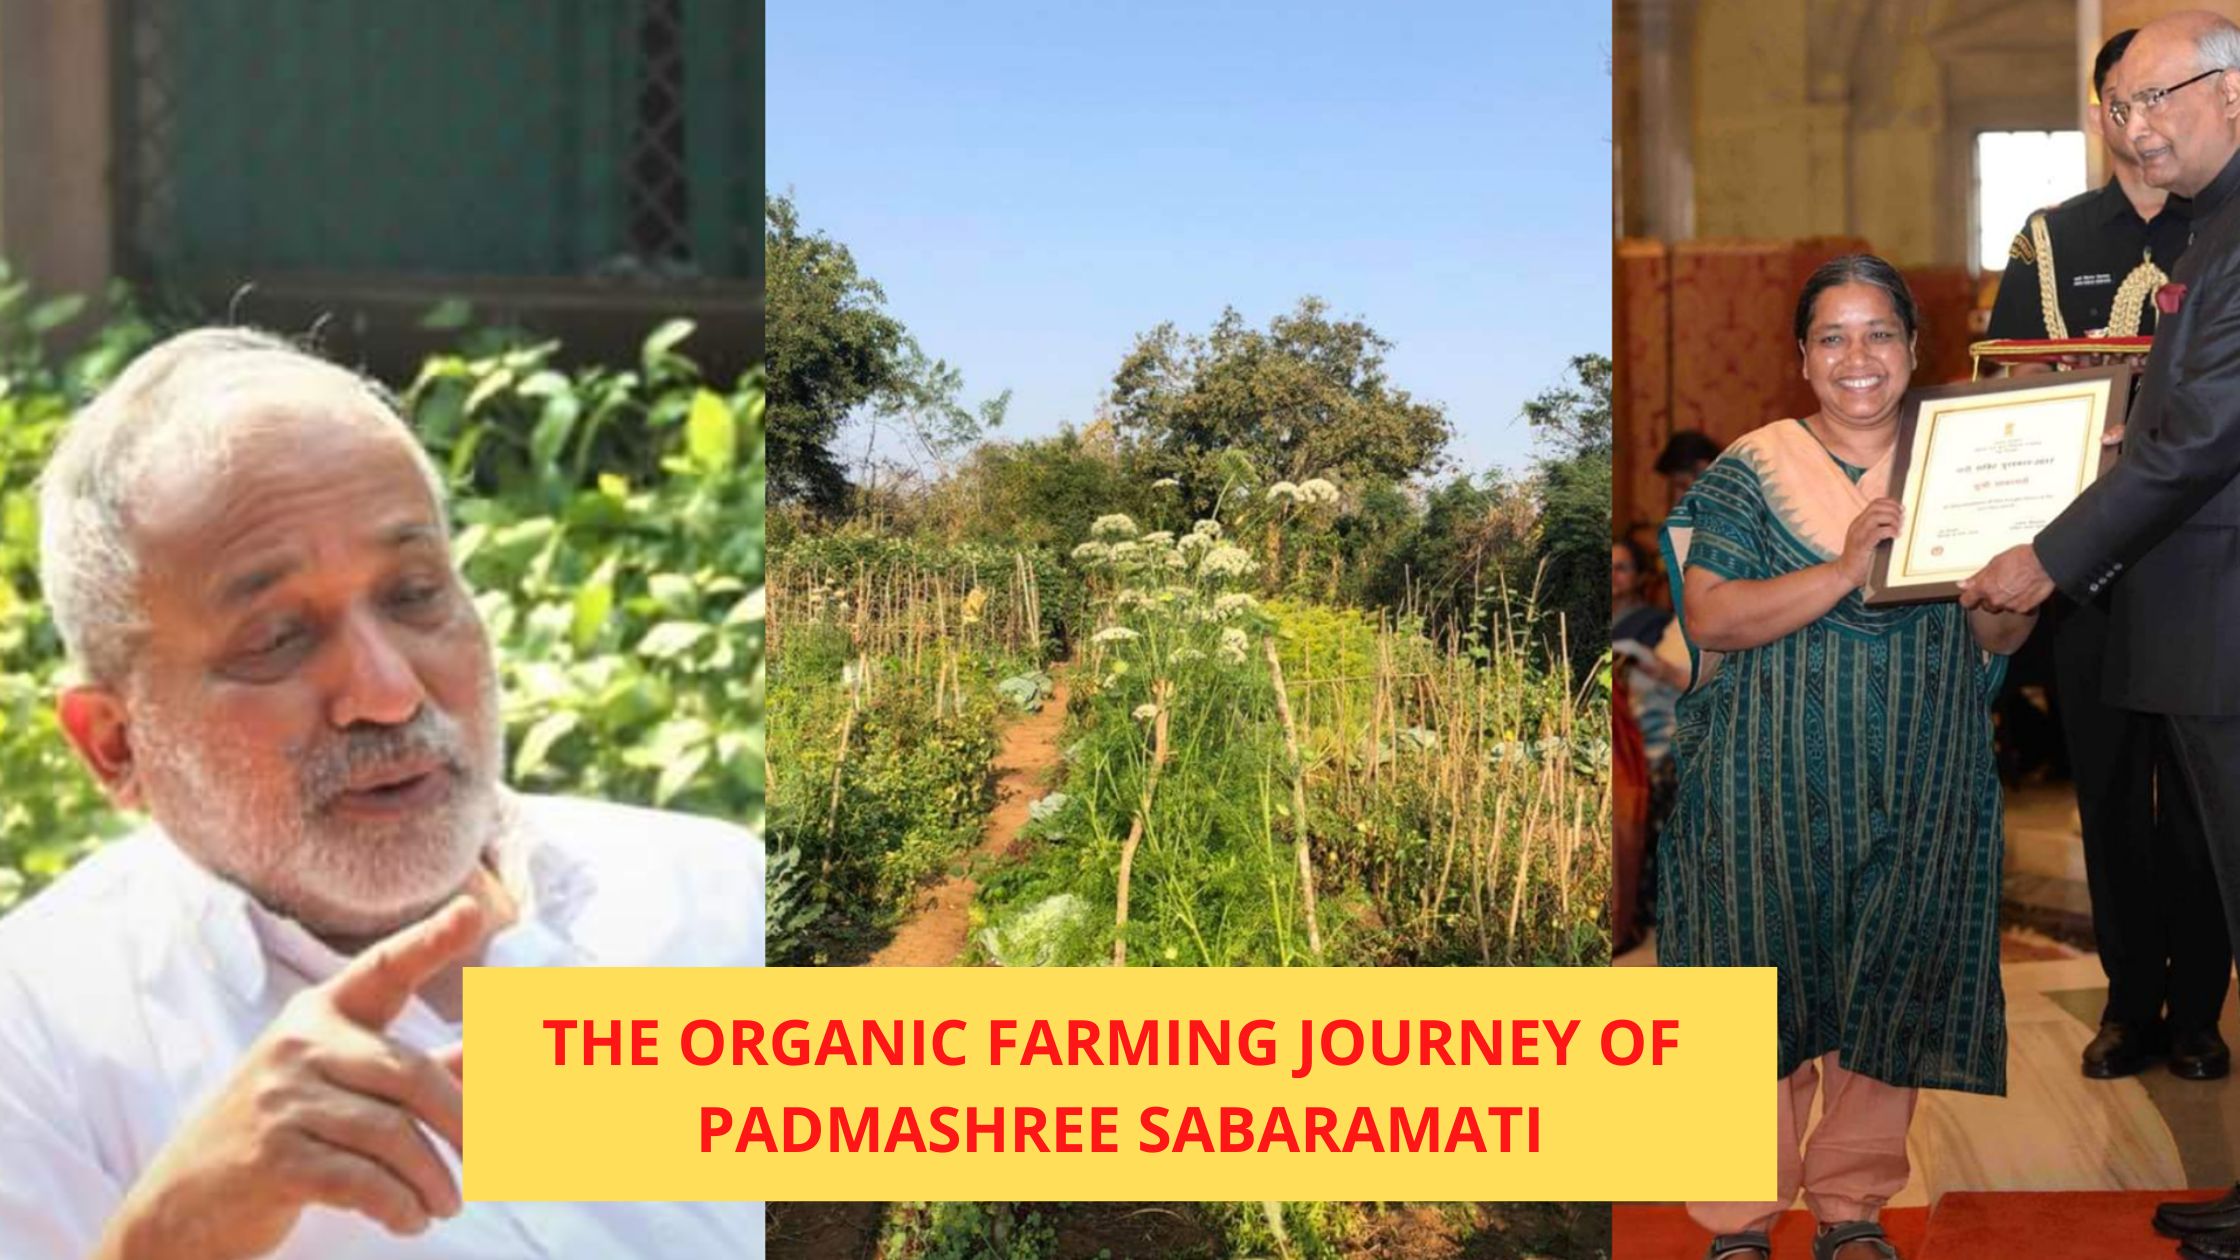 The organic farming journey of Padmashree Sabaramati